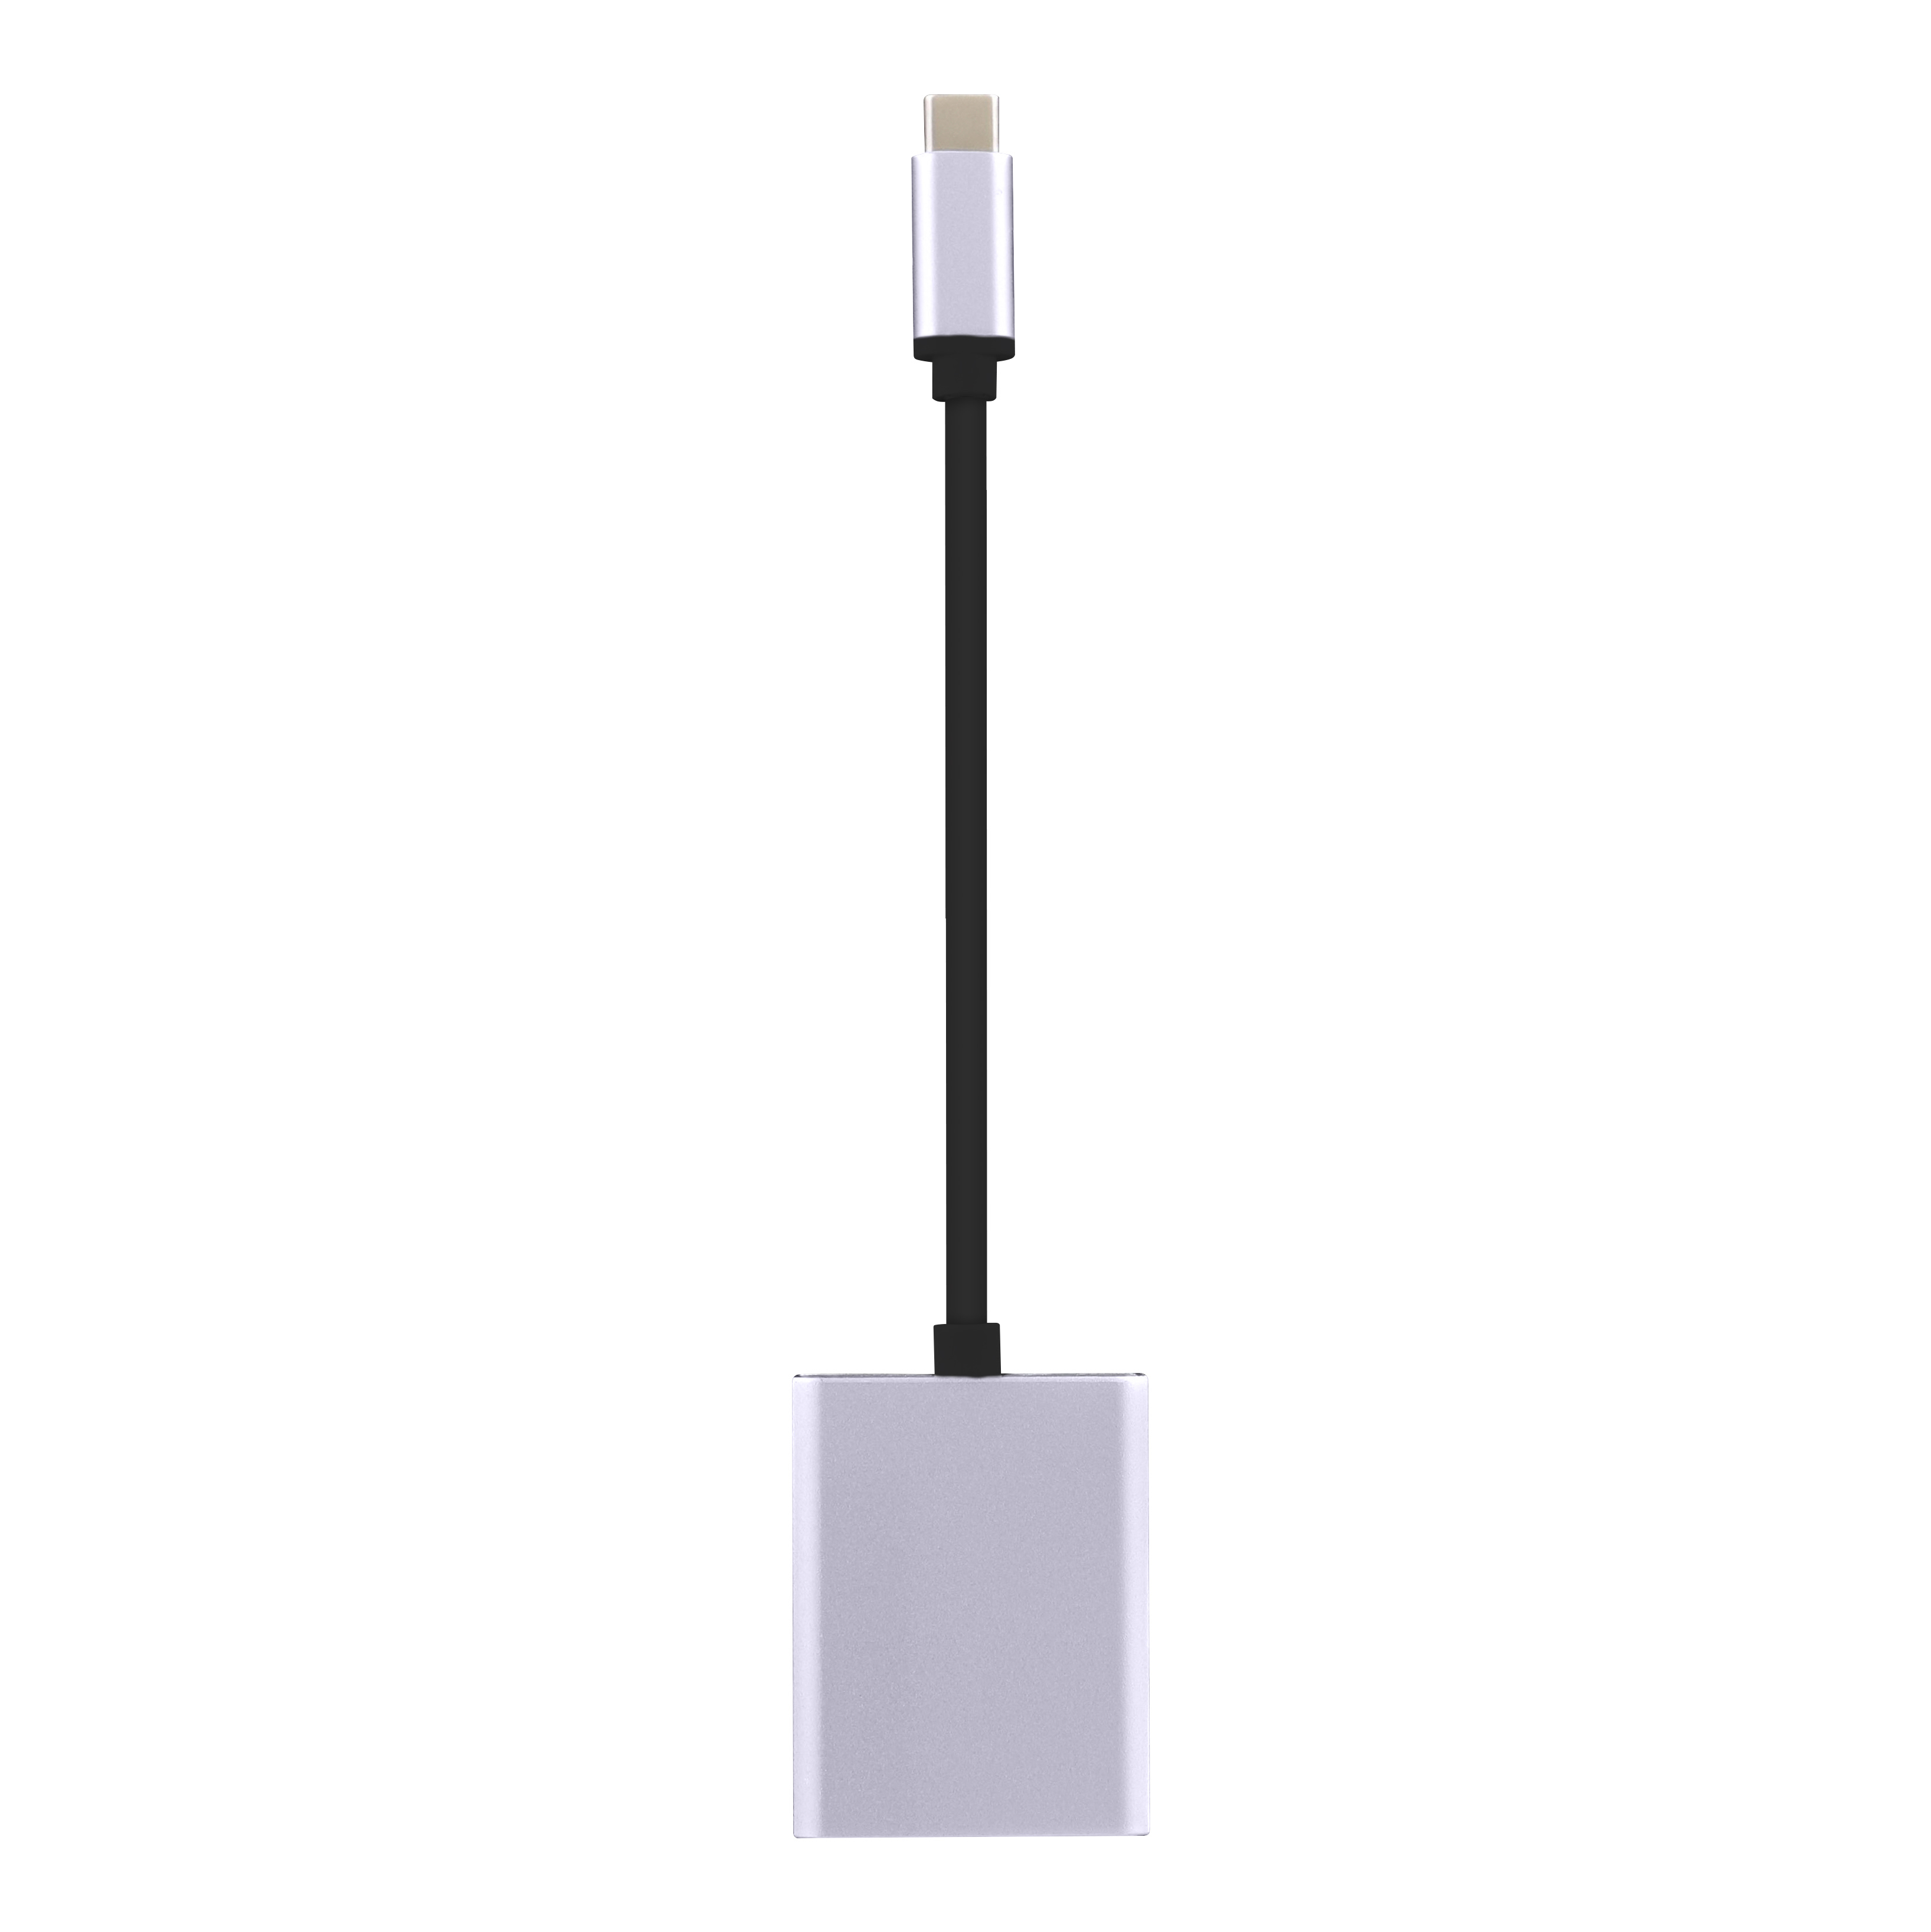 Adaptateur USB-C vers HDMI - Connectique PC - Cybertek.fr - 2